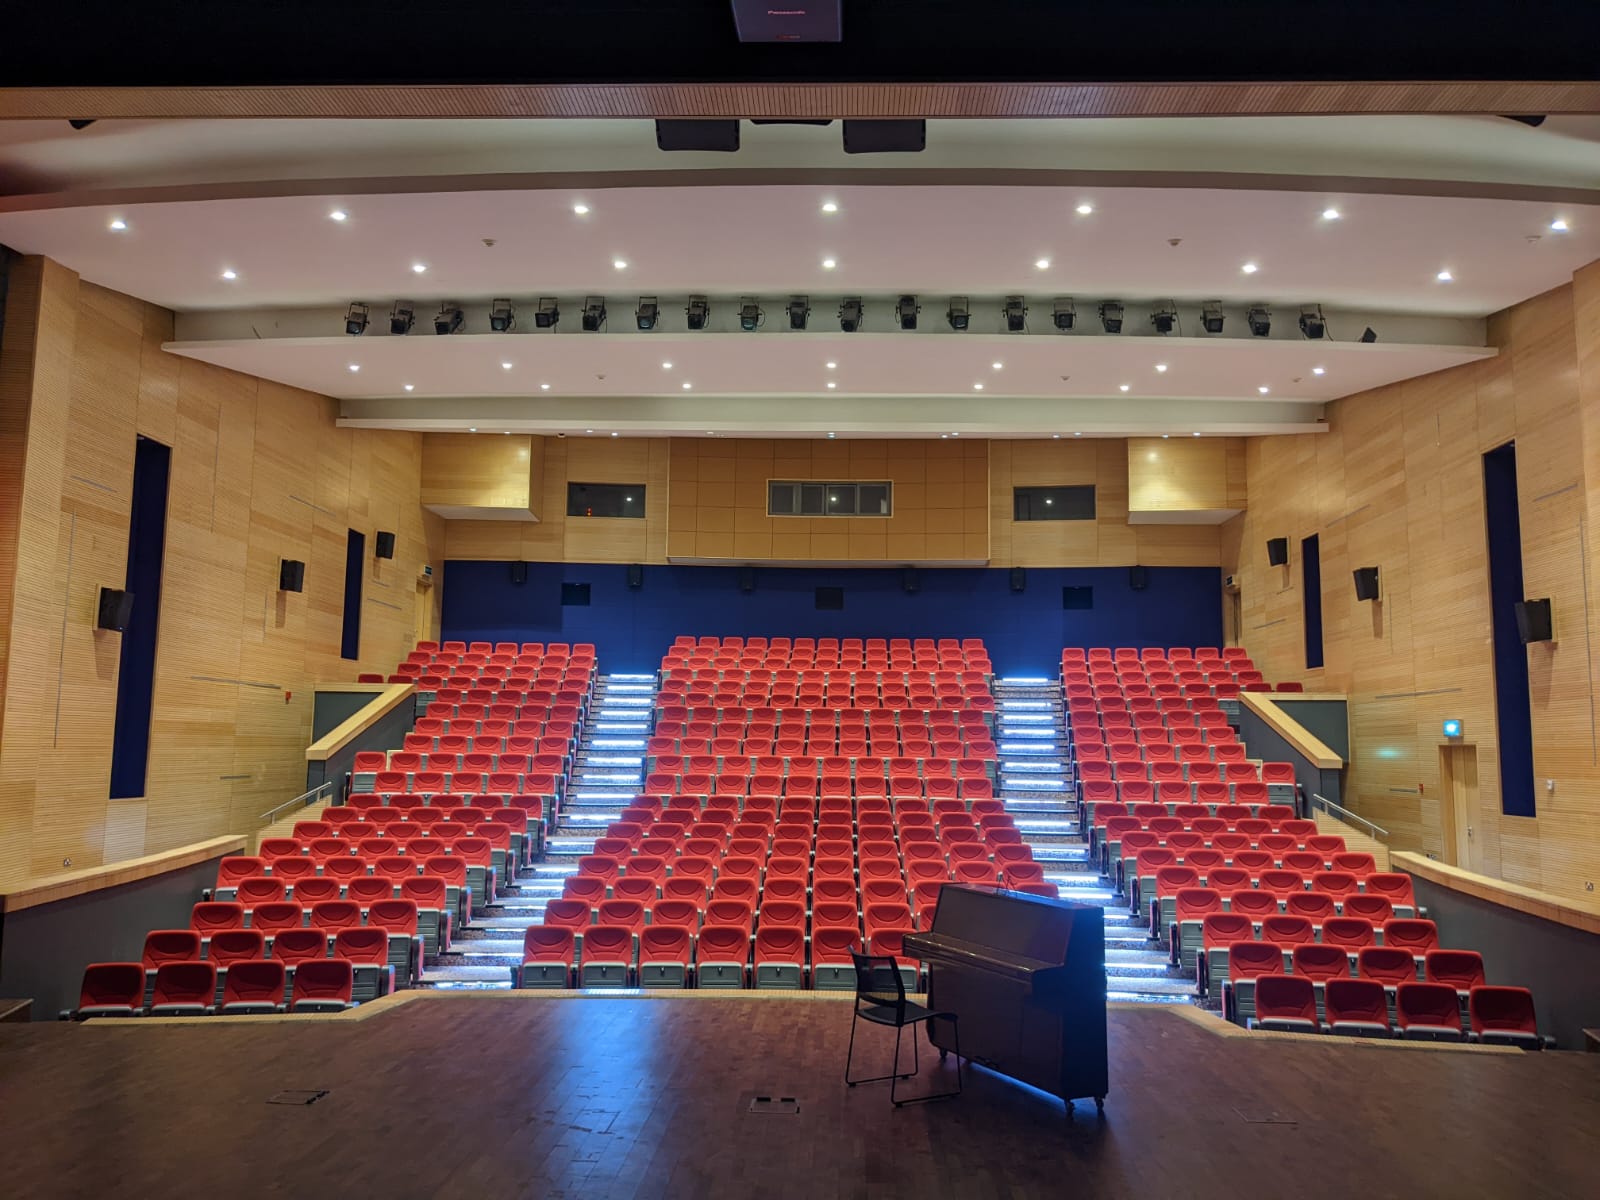 The AUS Auditorium seating